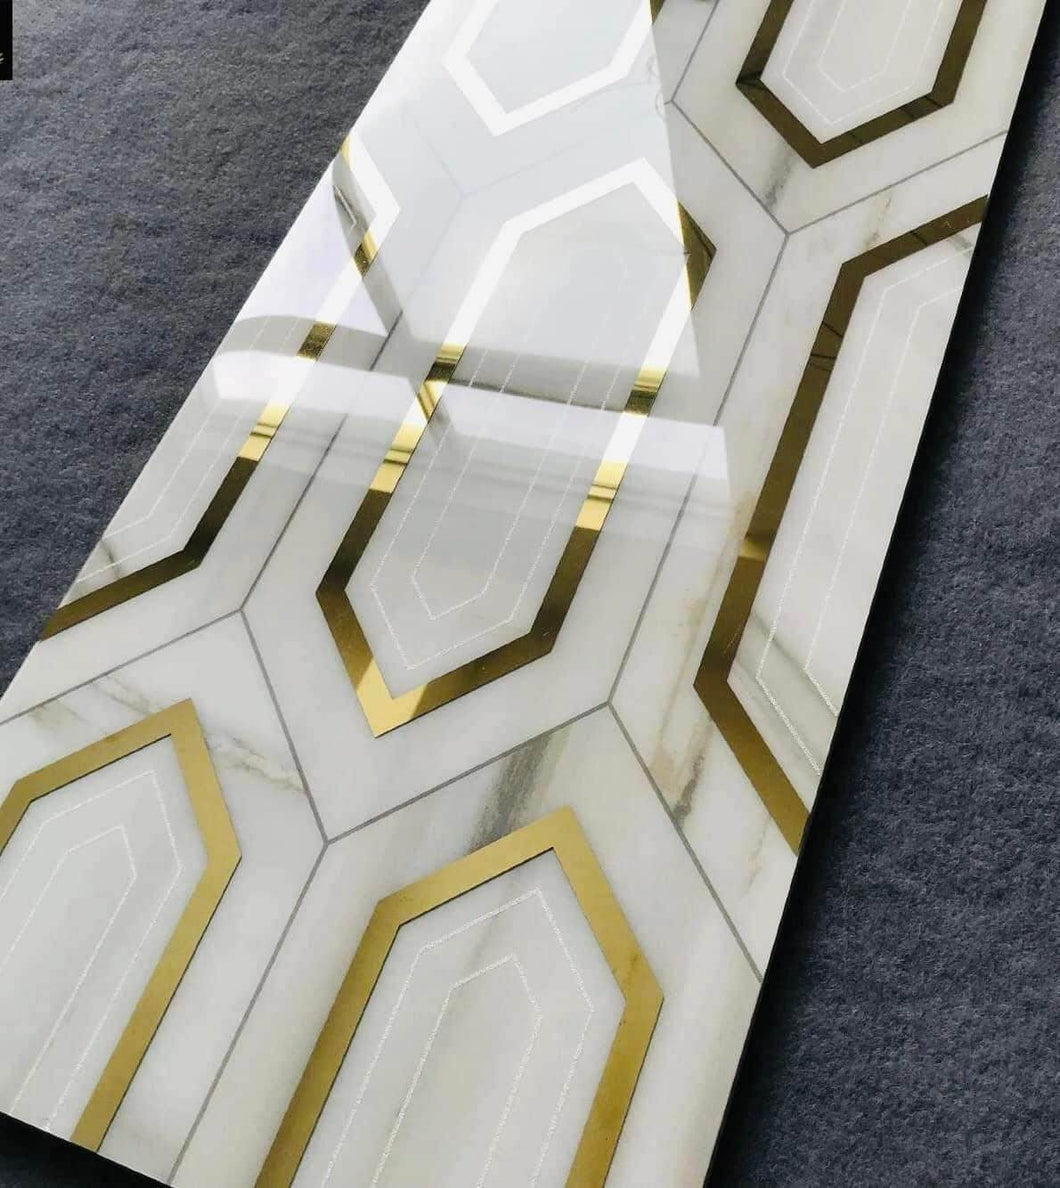 White Gold Tiles With Gold Diamond Design